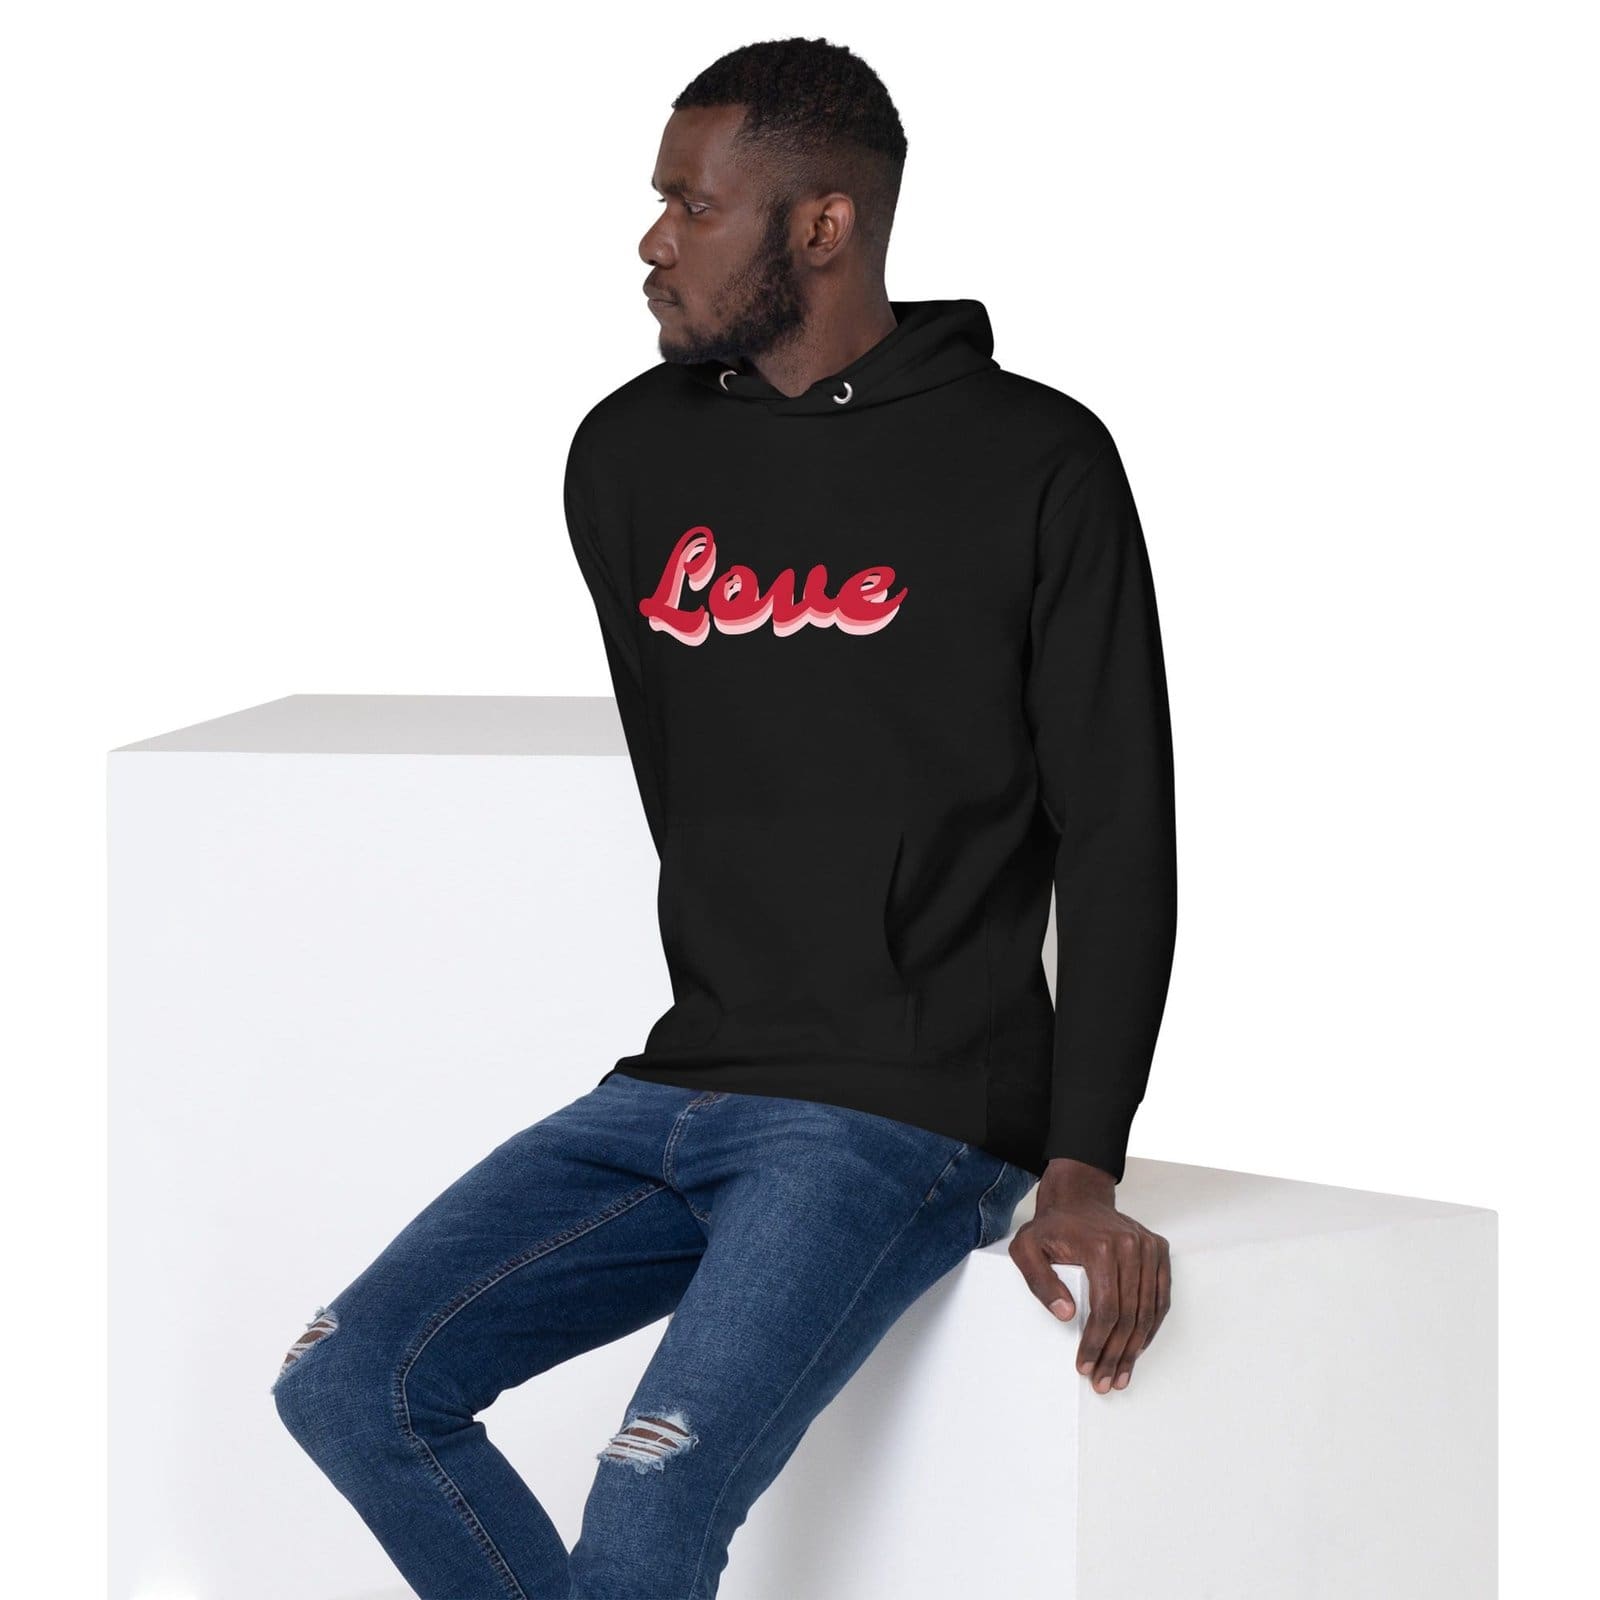 unisex-premium-hoodie-black-left-front-6521a03ca236f.jpg